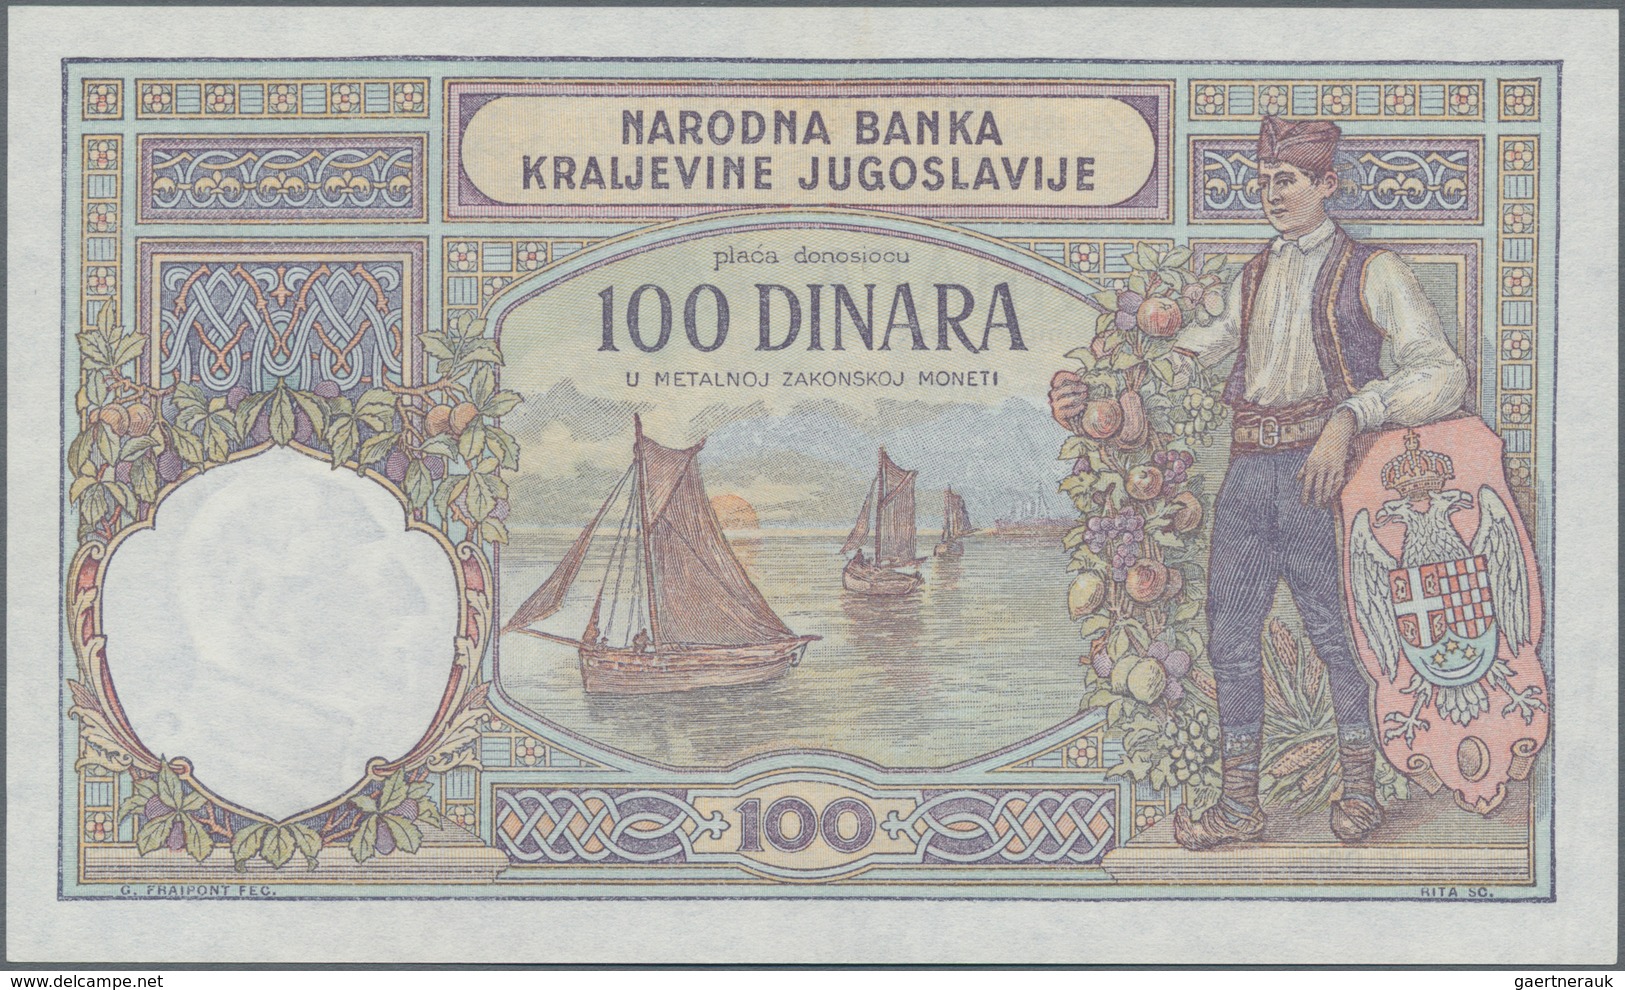 Yugoslavia / Jugoslavien: Kingdom of Yugoslavia set with 5 banknotes comprising 100 Dinara 1929 with